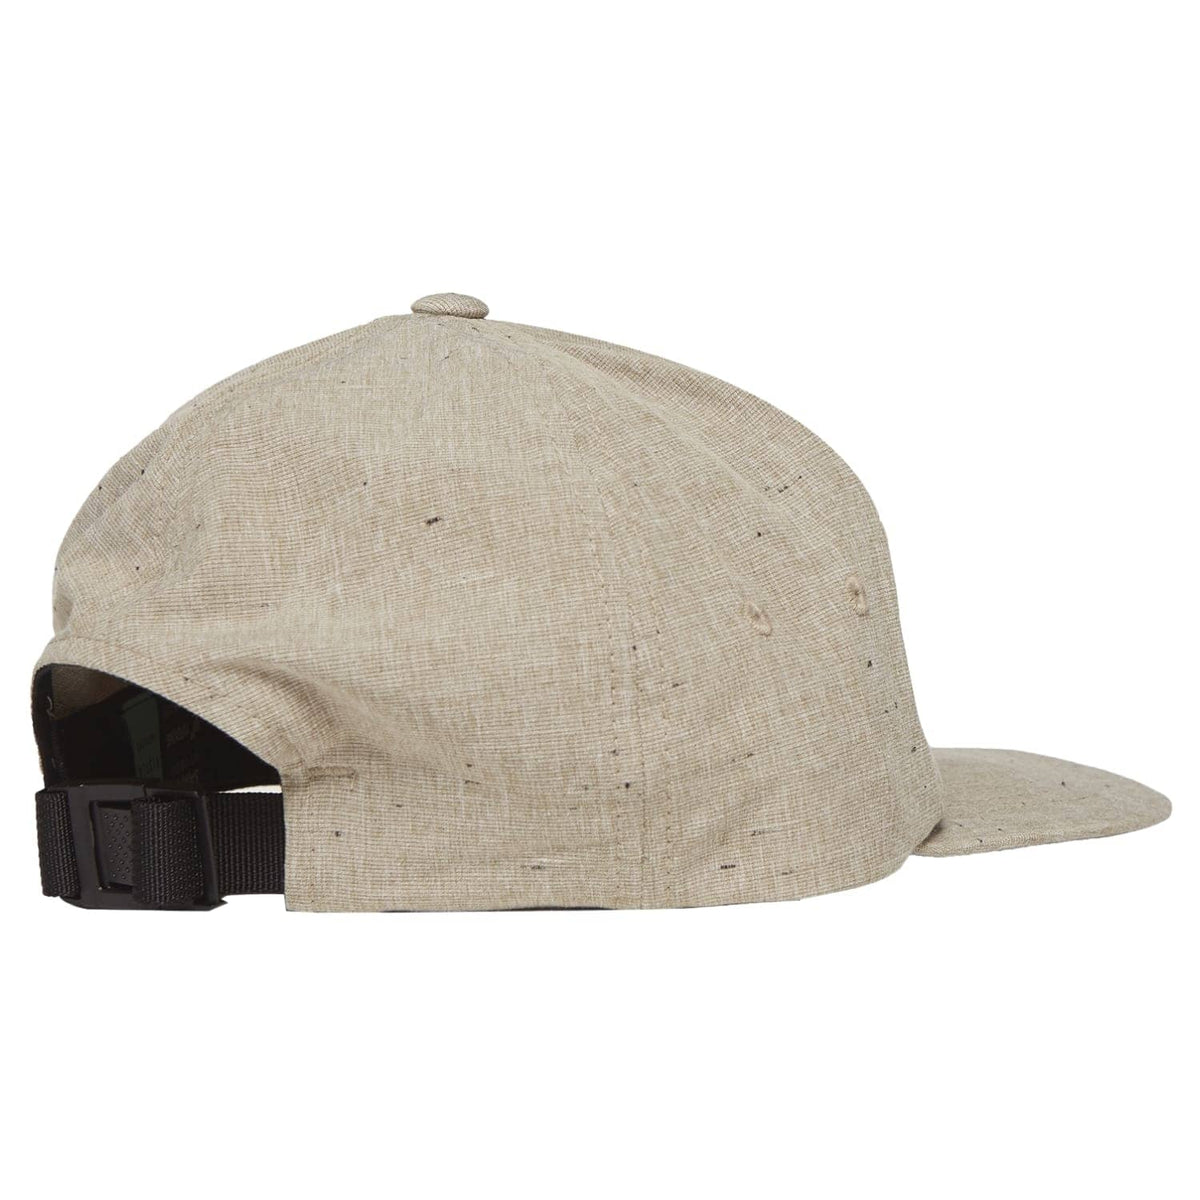 Vissla Lay Day Eco Hat Khaki O/S (one size) - Baseball Cap by Vissla